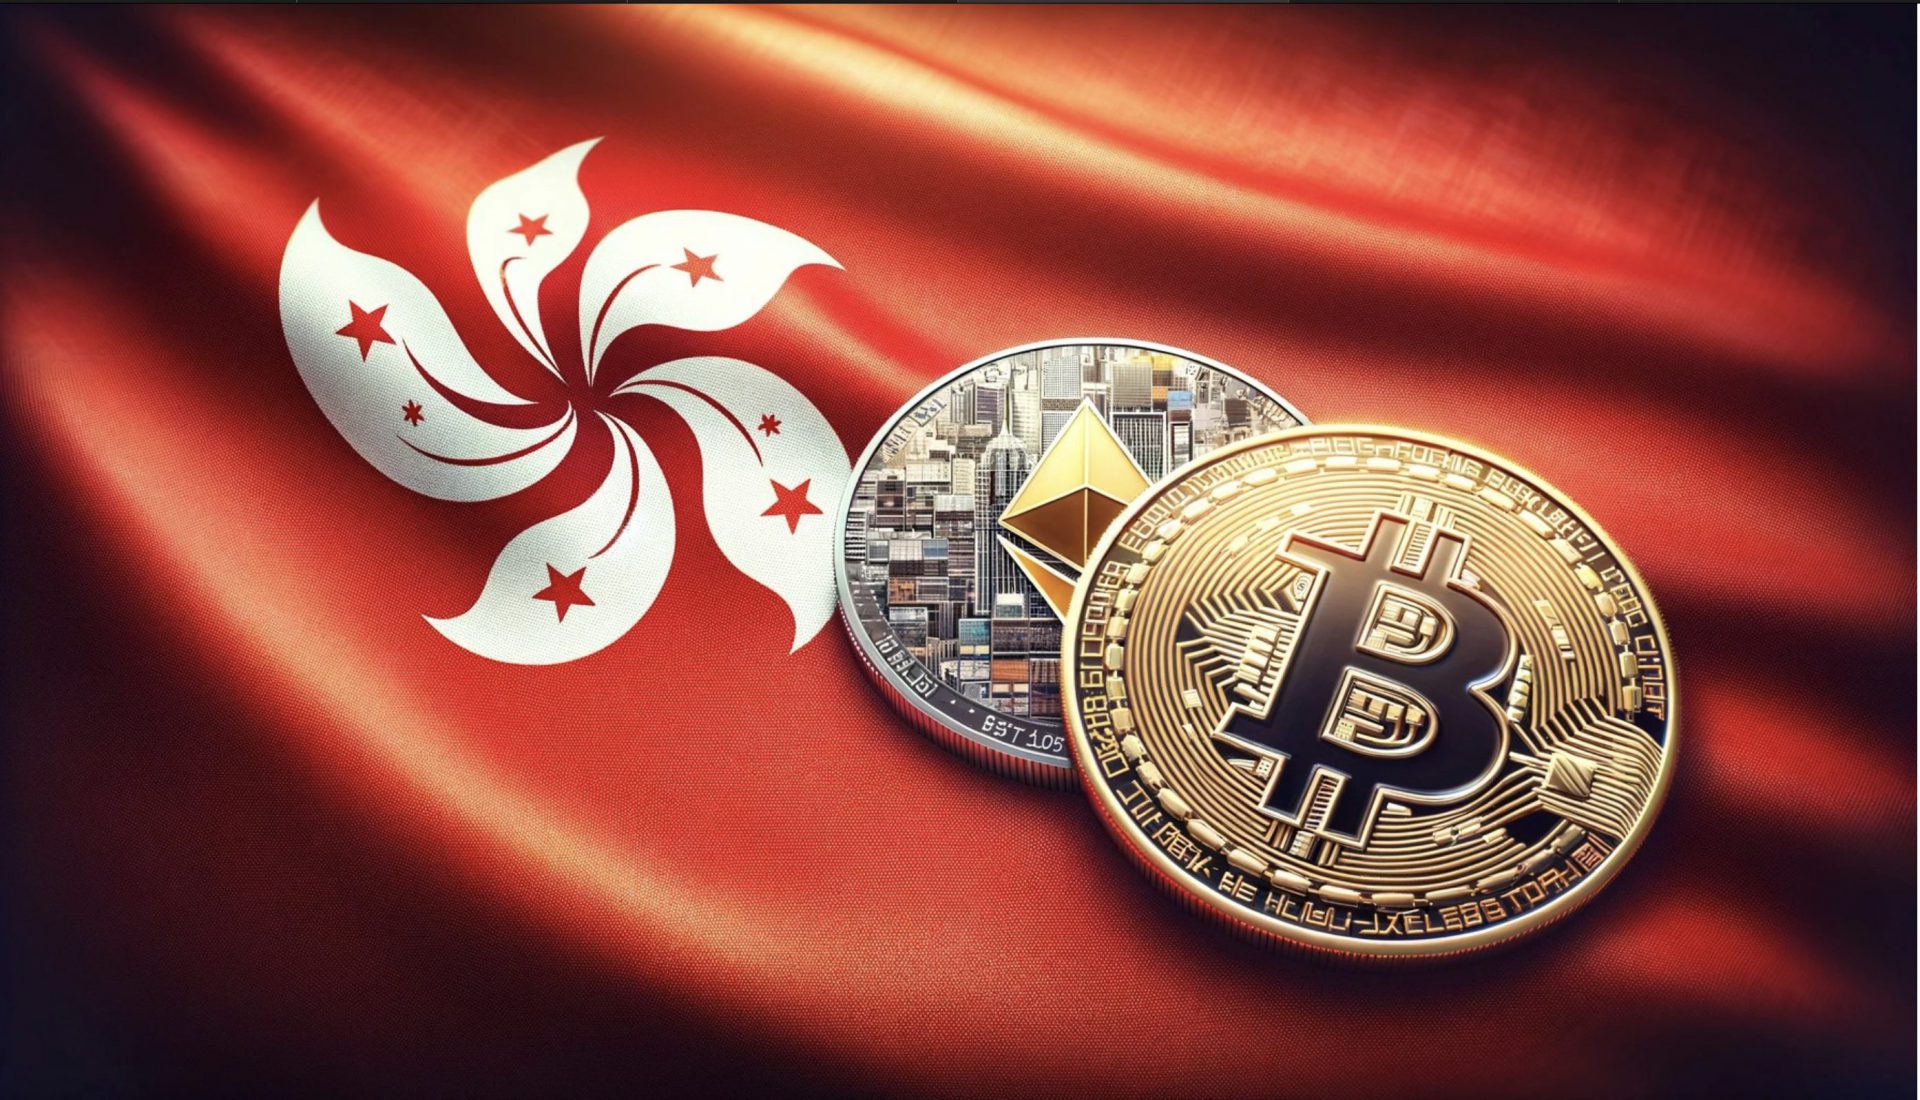 Hong Kong’da Spot Bitcoin ve Ethereum Uygulaması Onaylandı